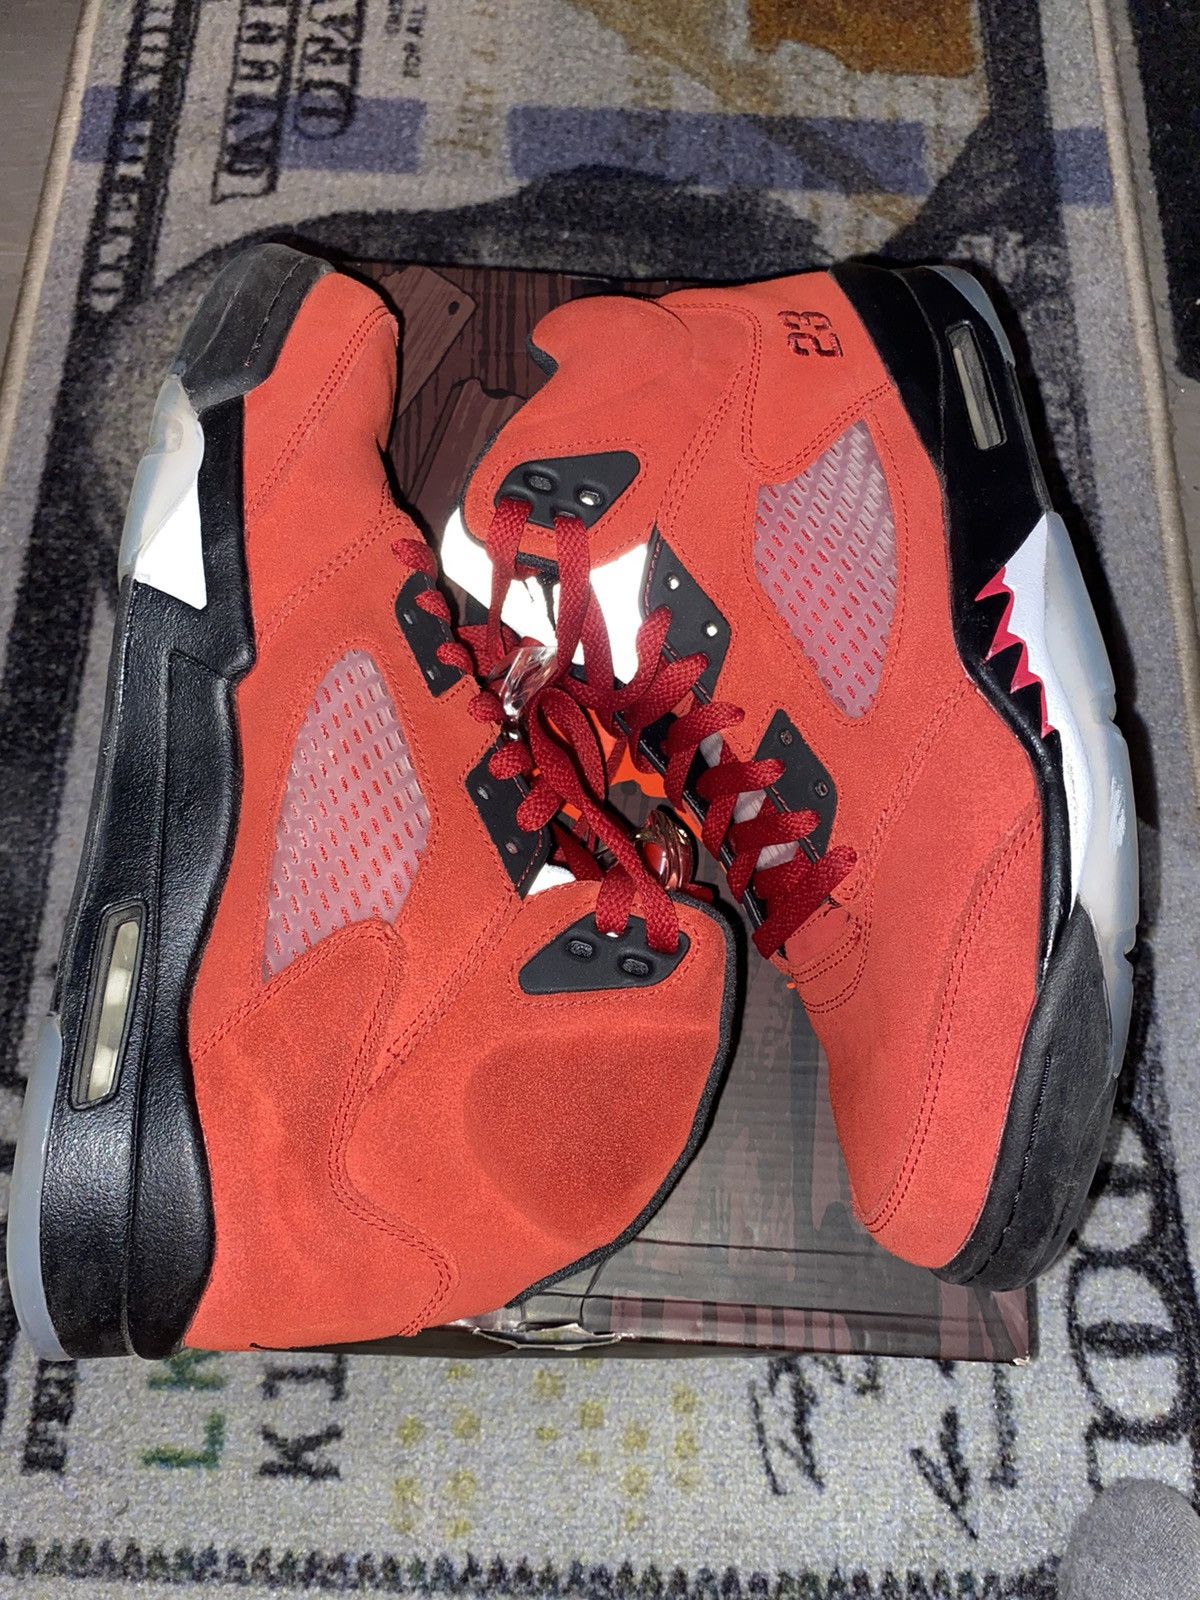 Pre-owned Jordan Nike Jordan 5 Retro Raging Bull Red Shoes